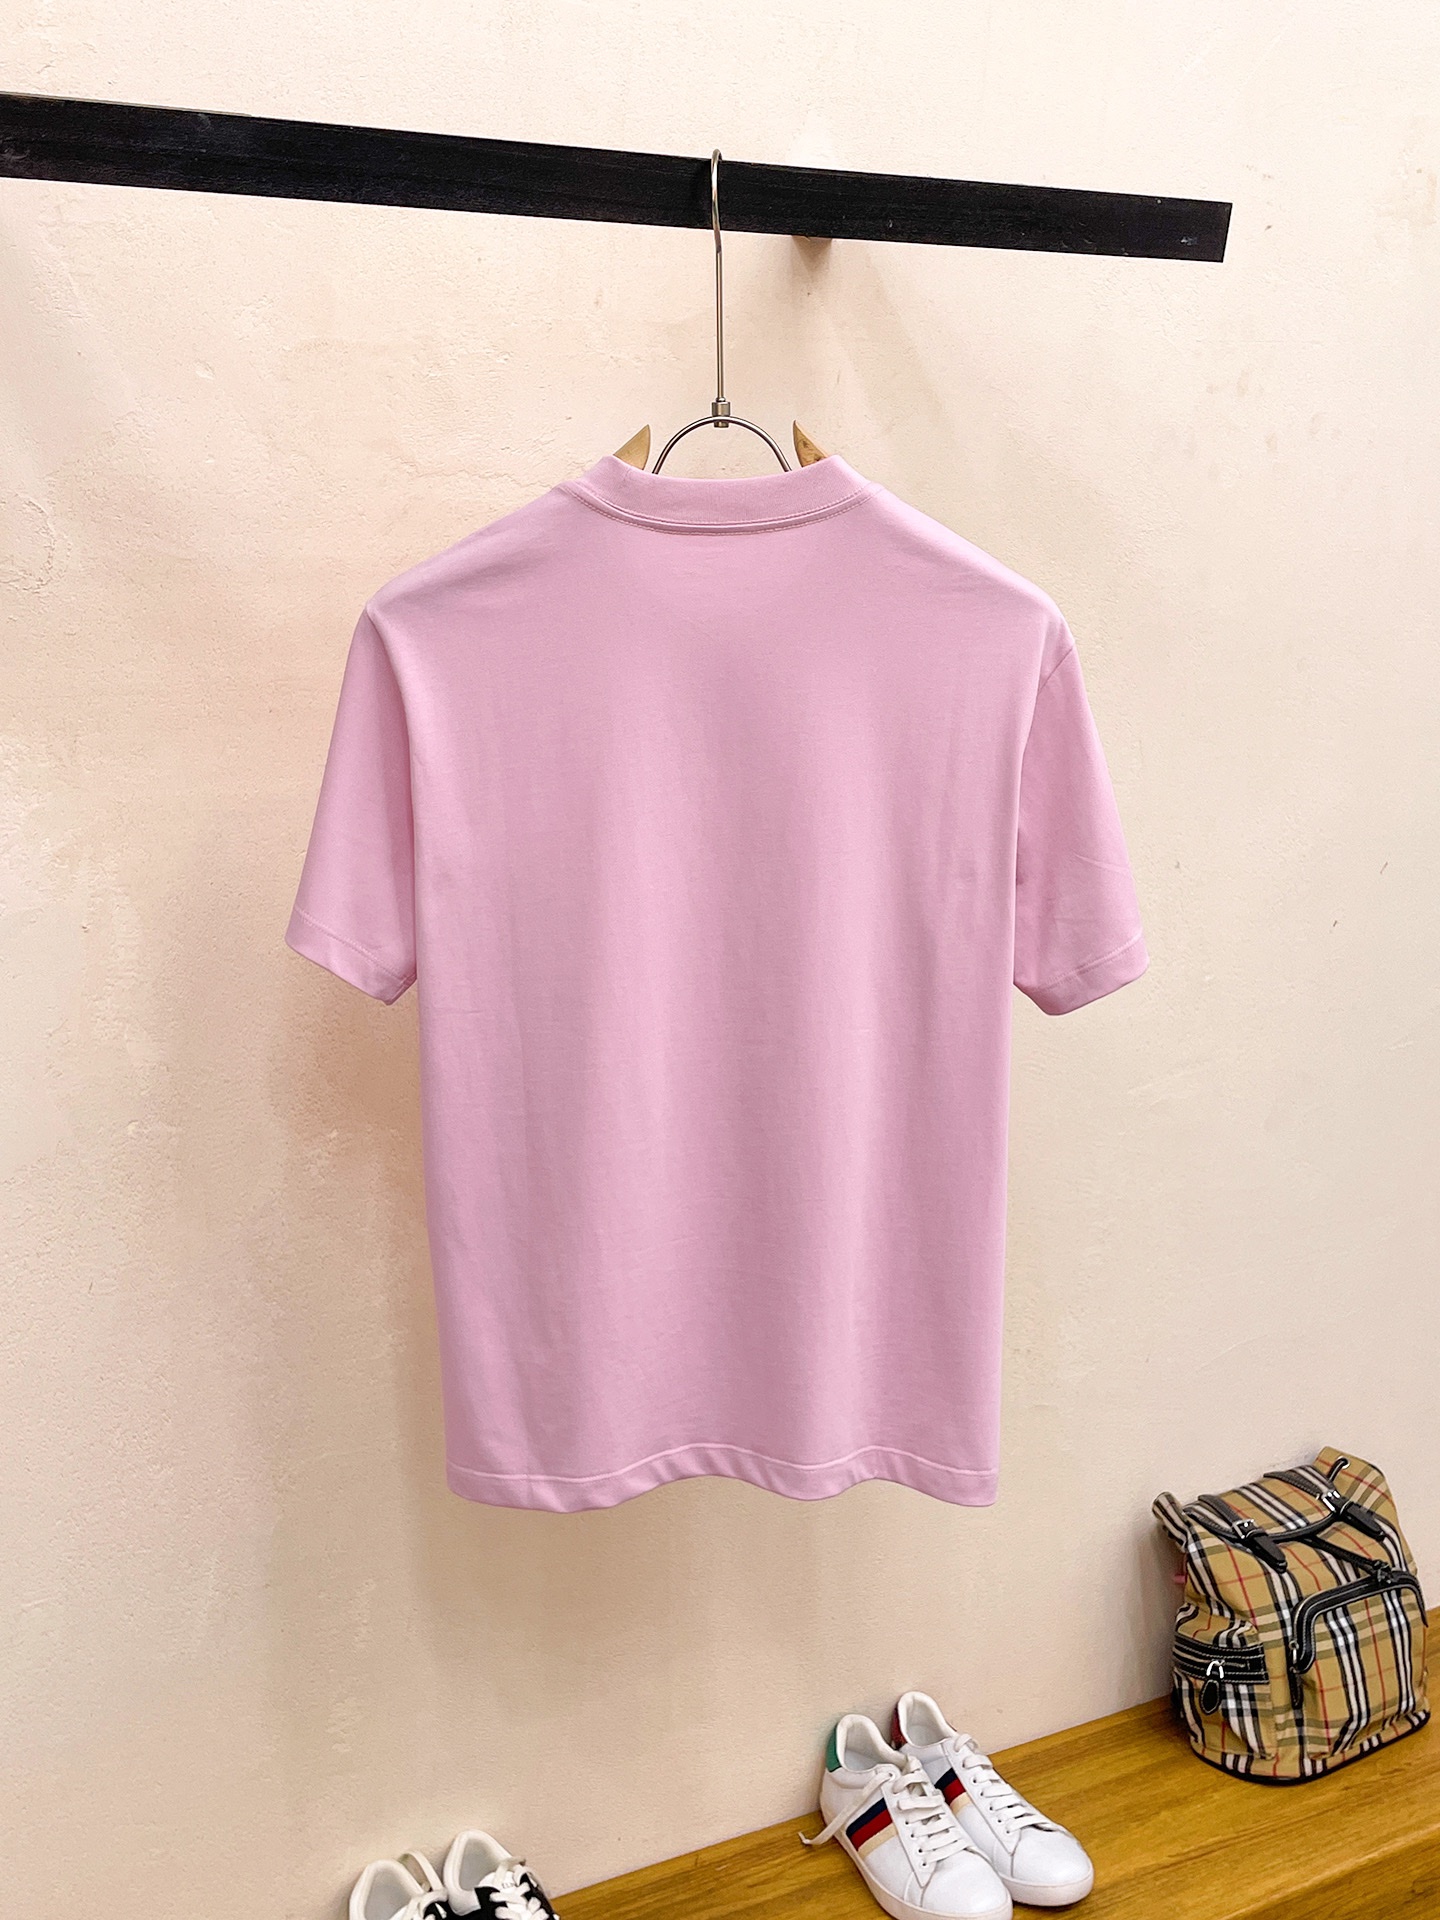 prada の t シャツ激安通販 短袖 ゆったり 純綿 トップス プリント 柔らかい シンプル ピンク_2